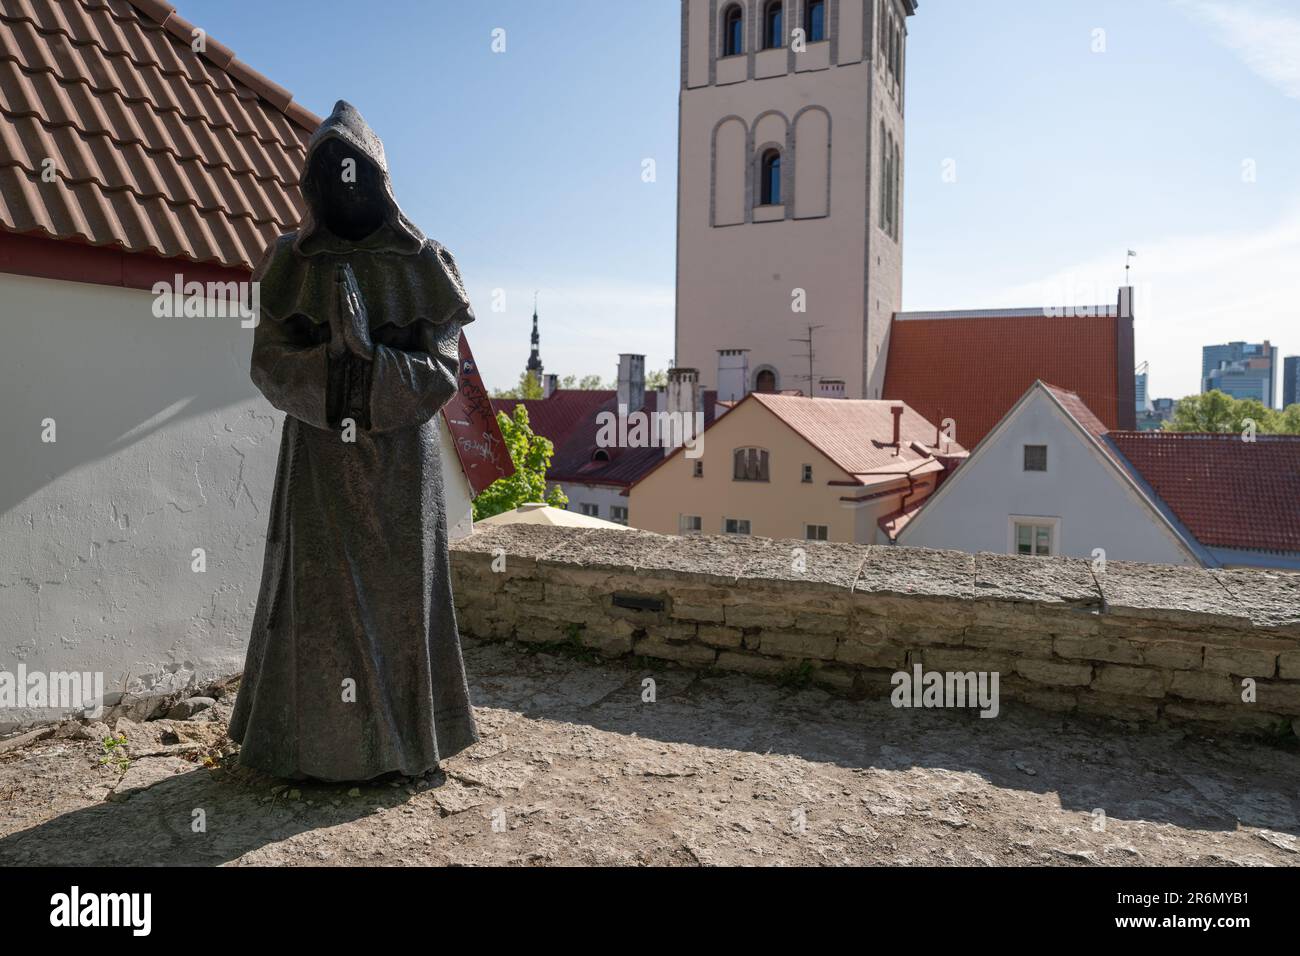 A praying monk at Danish King’s Garden in Tallinn Stock Photo